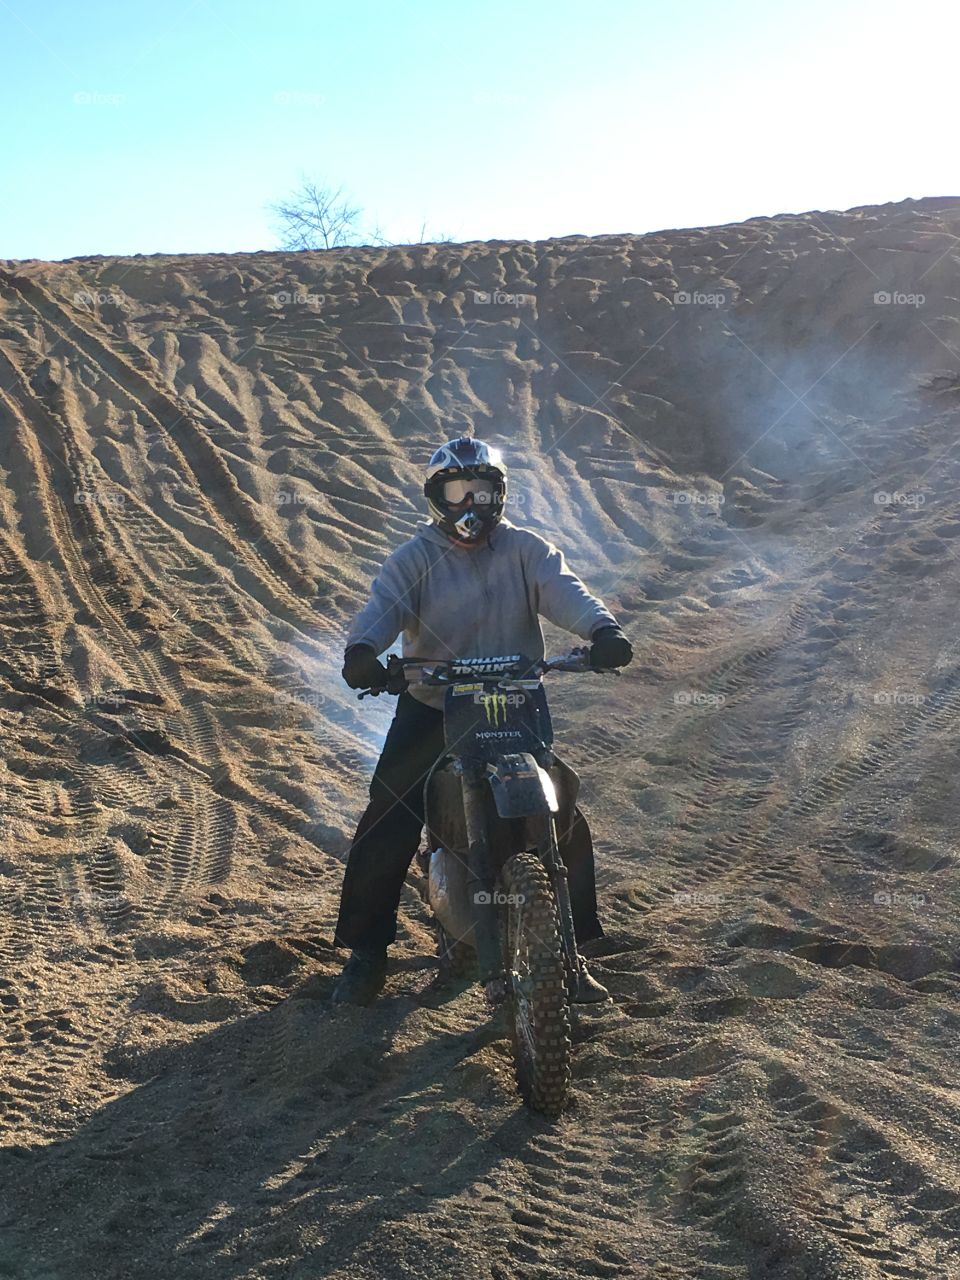 Dirt bike Attica Indiana 